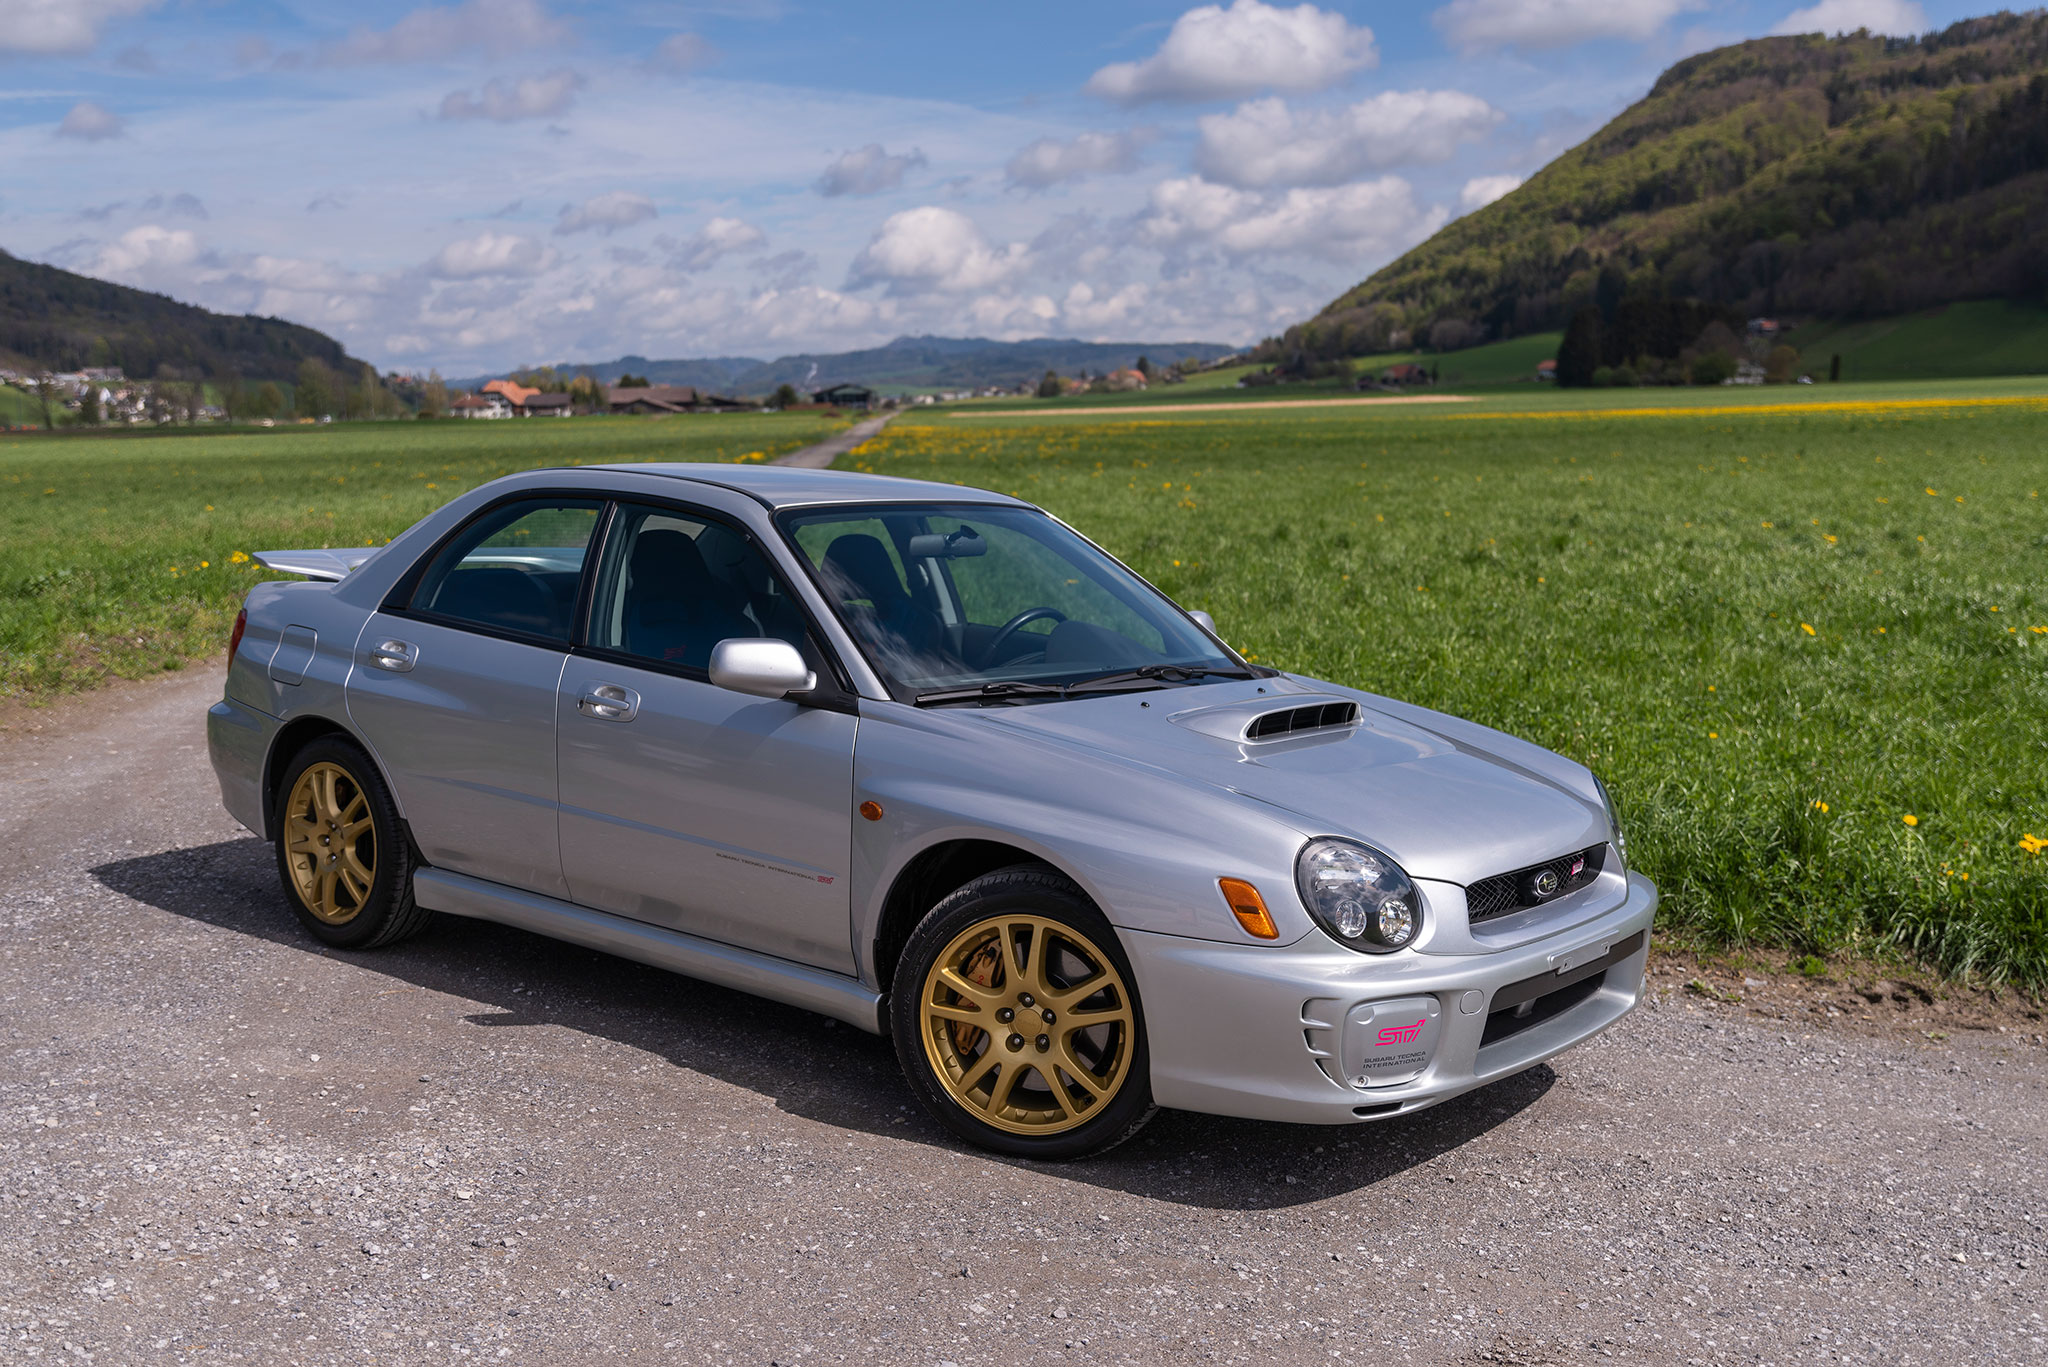 2001 Subaru Impreza WRX STI – cette première génération est en parfait état et offre de belles sensations de conduite - Vente aux enchères Lucerne 2023.